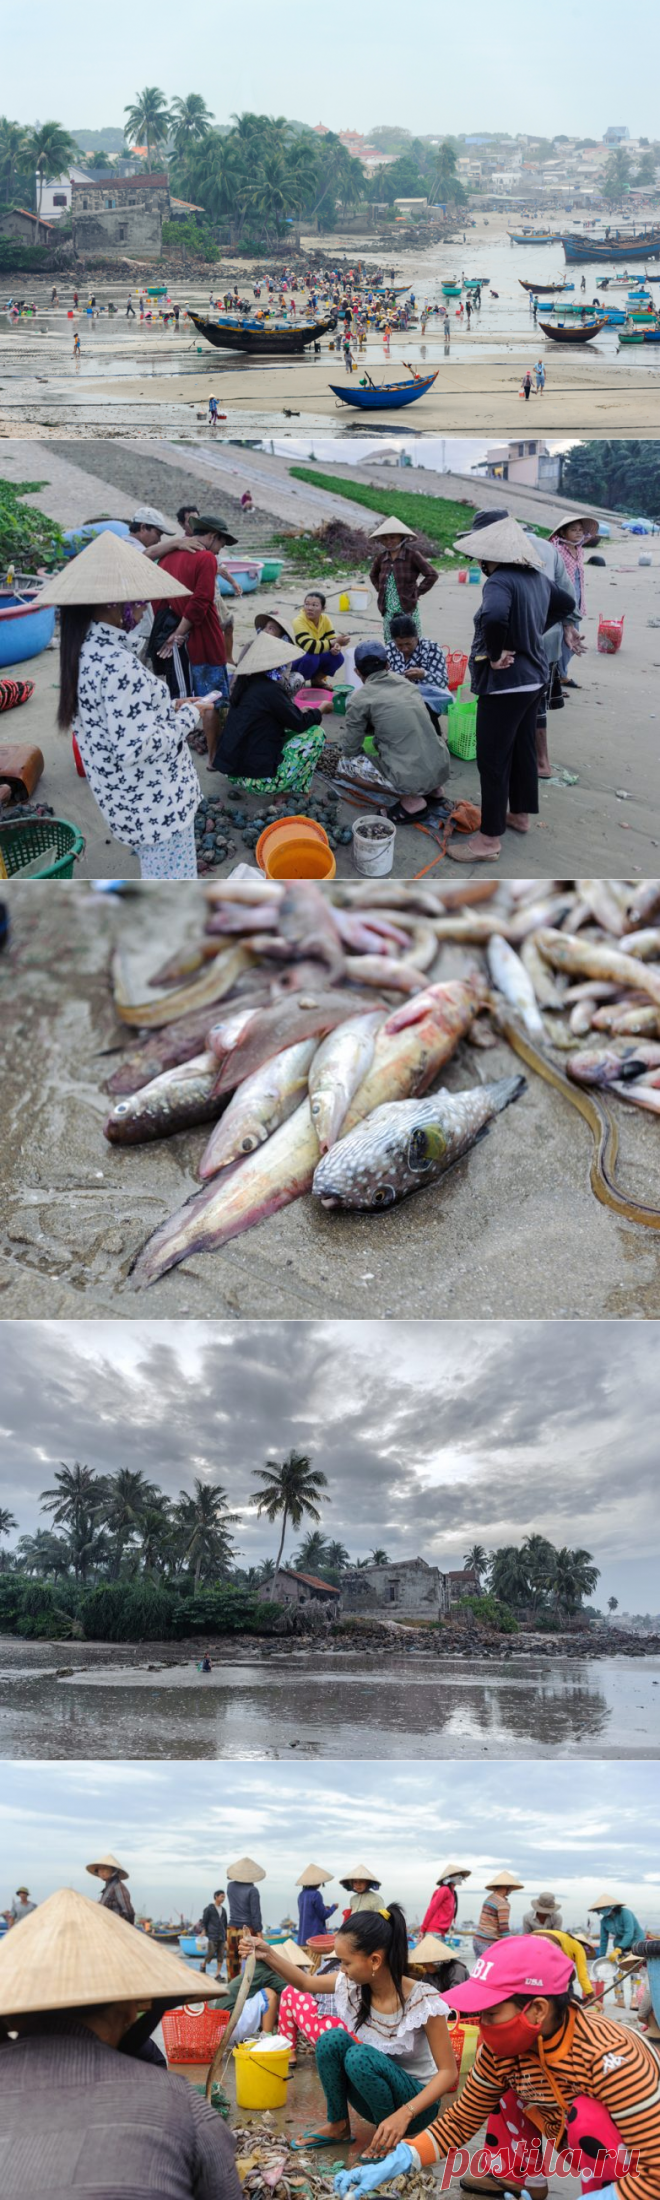 Мы пришли на рыбный рынок! / Туристический спутник